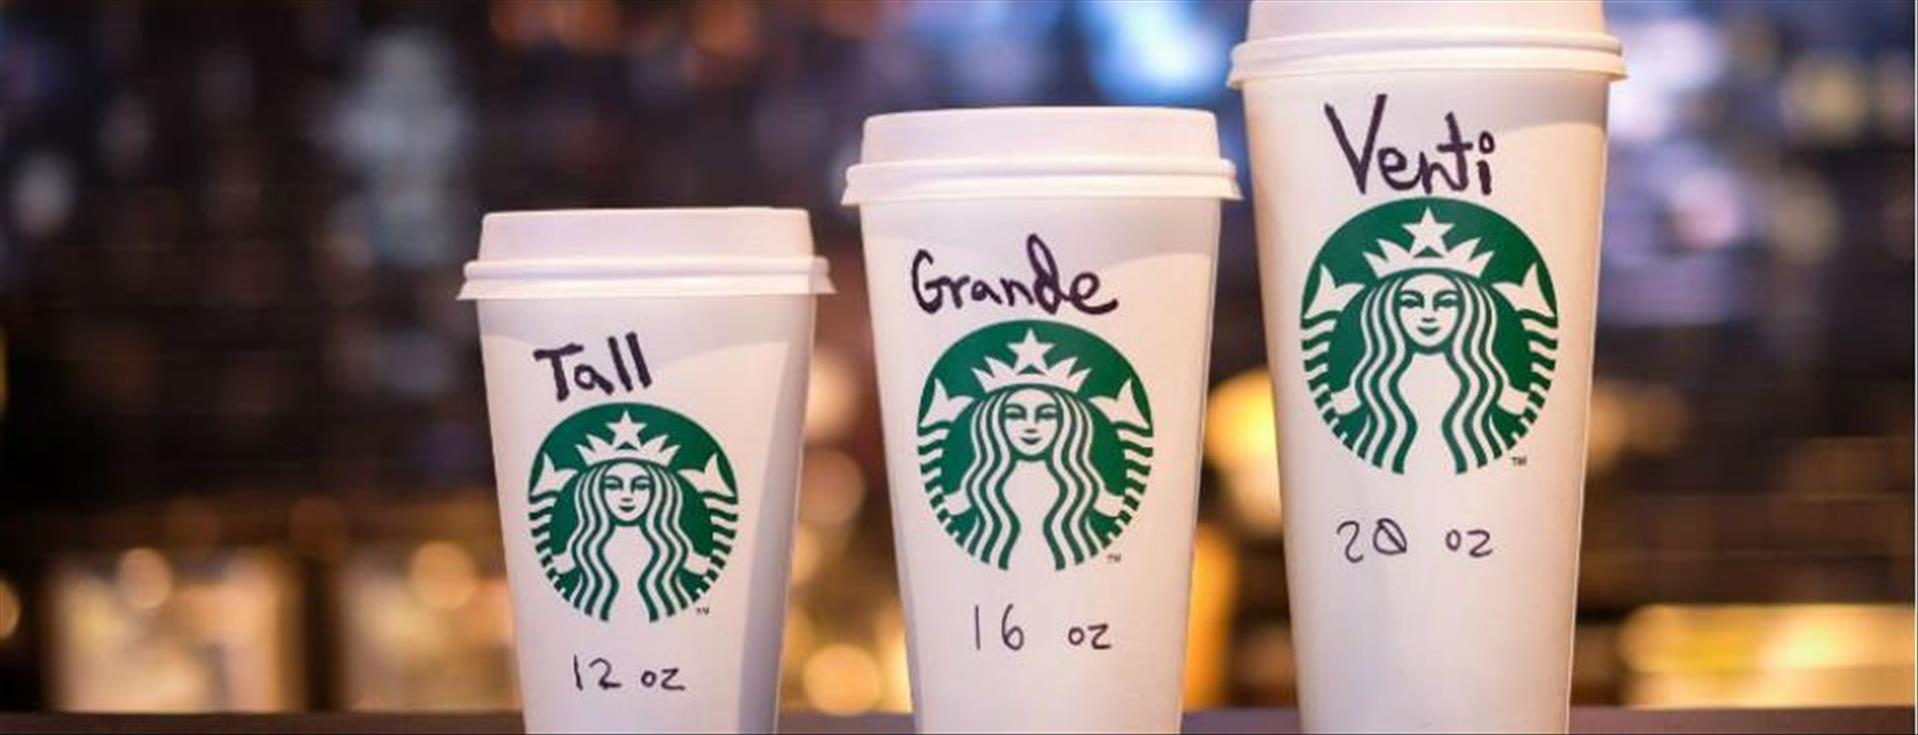 Starbucks Bardak İsimlerinin İlginç Hikayesi: Neden Tall, Grande, Venti?